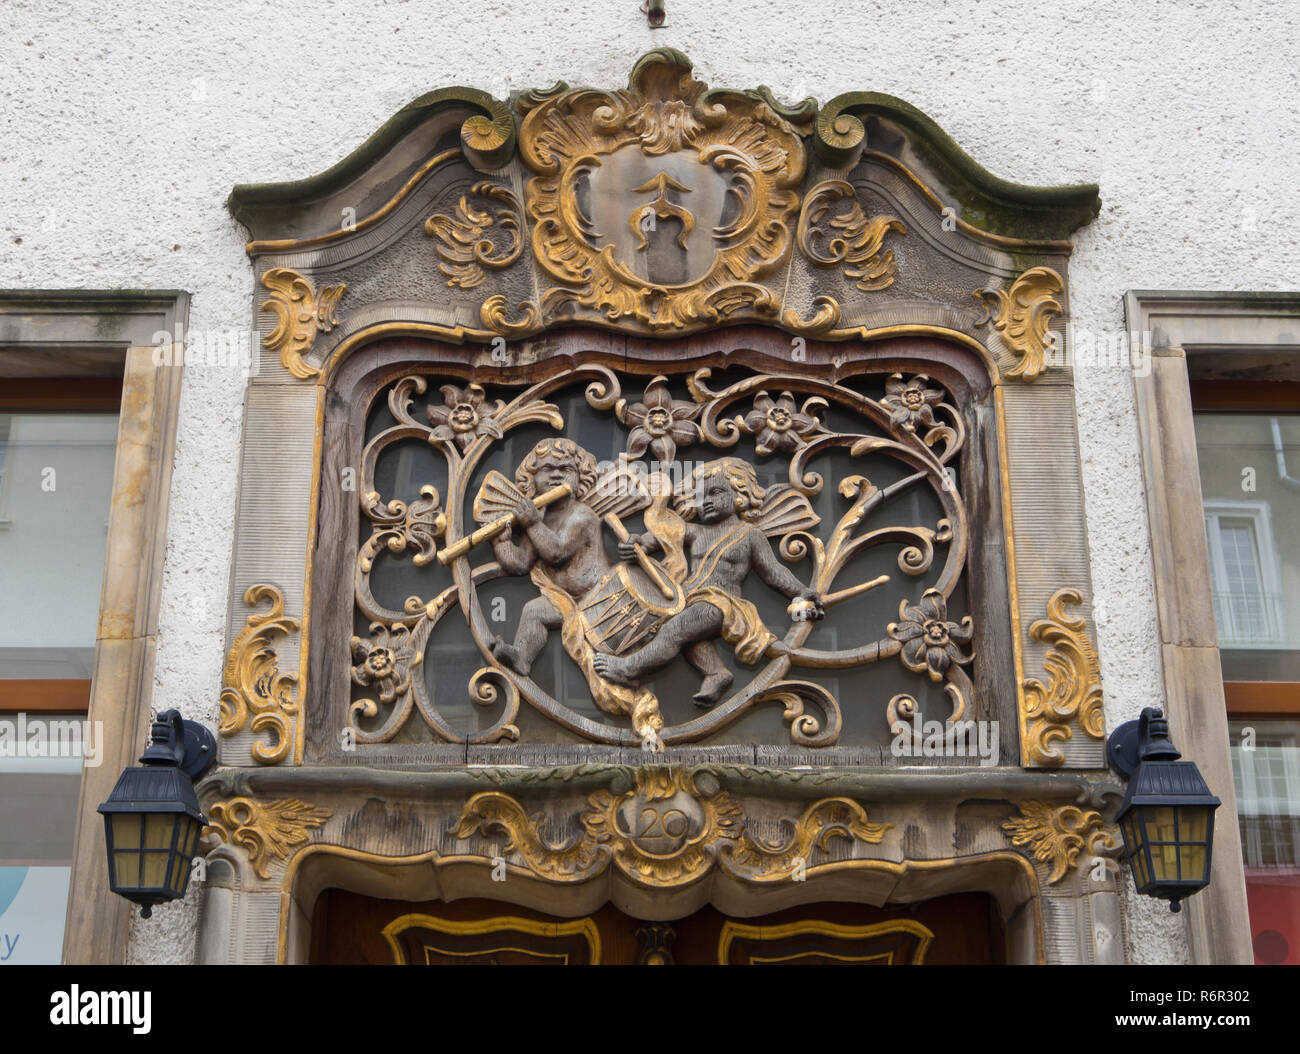 Dettaglio del barocco intagliato e dorato di decorazione gli angeli musicale e di acanto al di sopra di un ingresso ad un edificio nel centro di Danzica Polonia Foto Stock